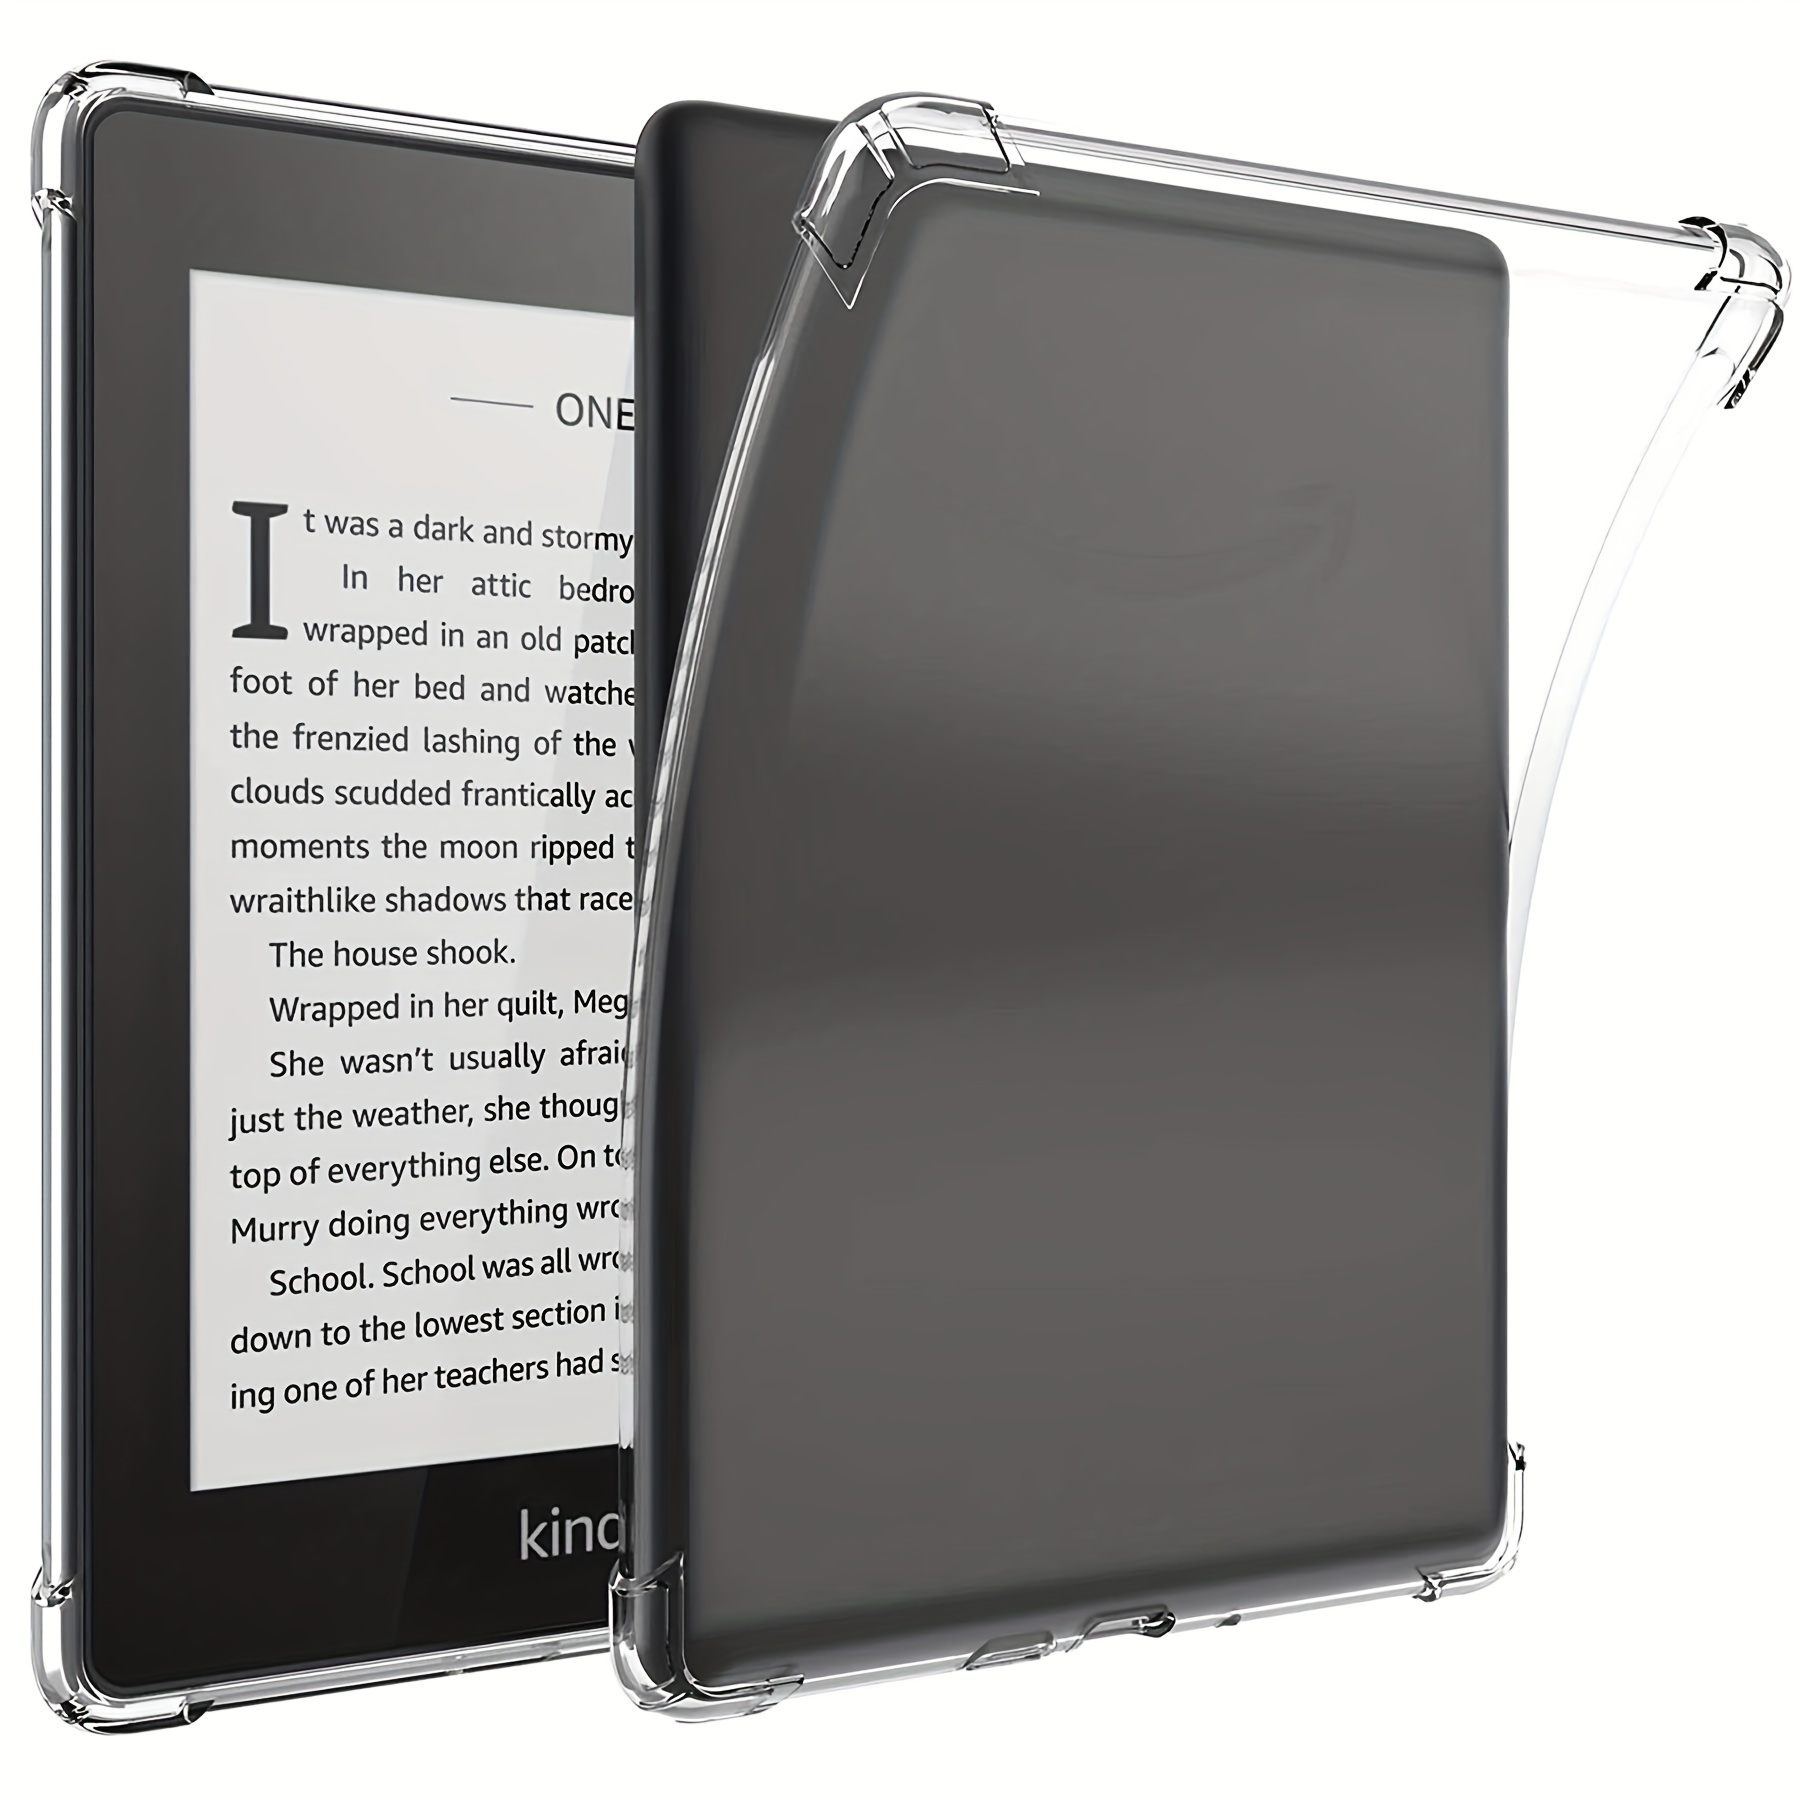 Funda Kindle Paperwhite 10th generación / 4ta Generación